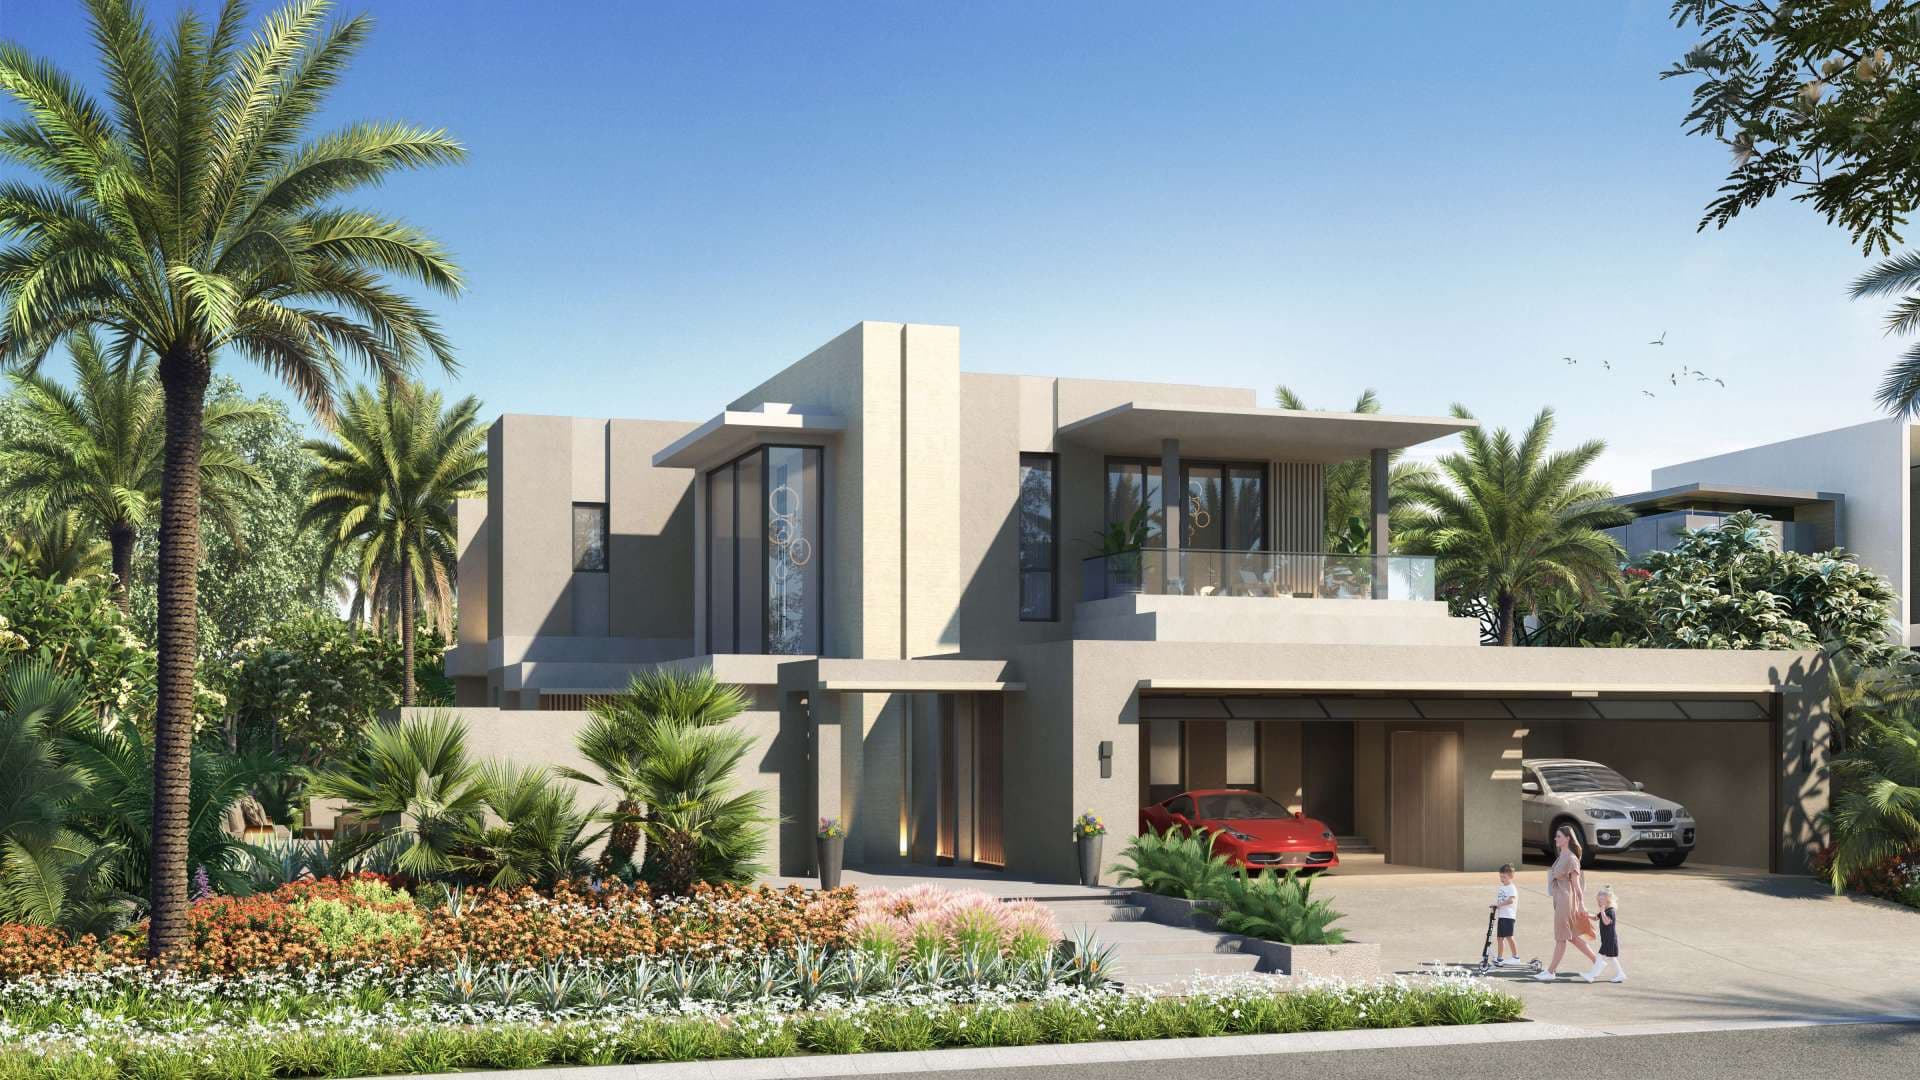  Bedroom Villa For Sale Jebel Ali Village Lp09184 Bed59232db78080.jpg